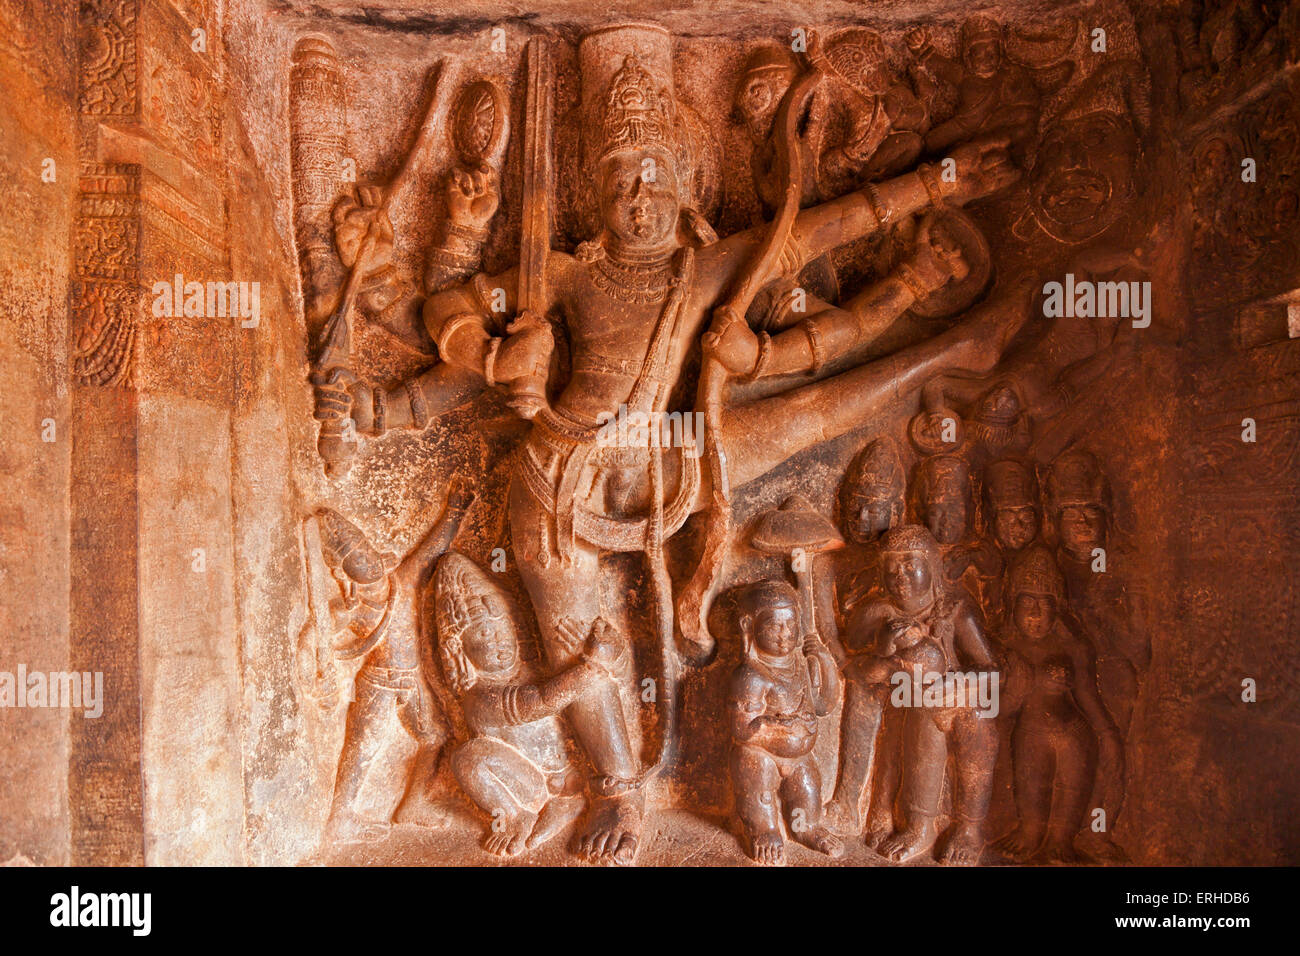 Imagen hindú en los templos cueva de Badami, Karnataka, India, Asia Foto de stock